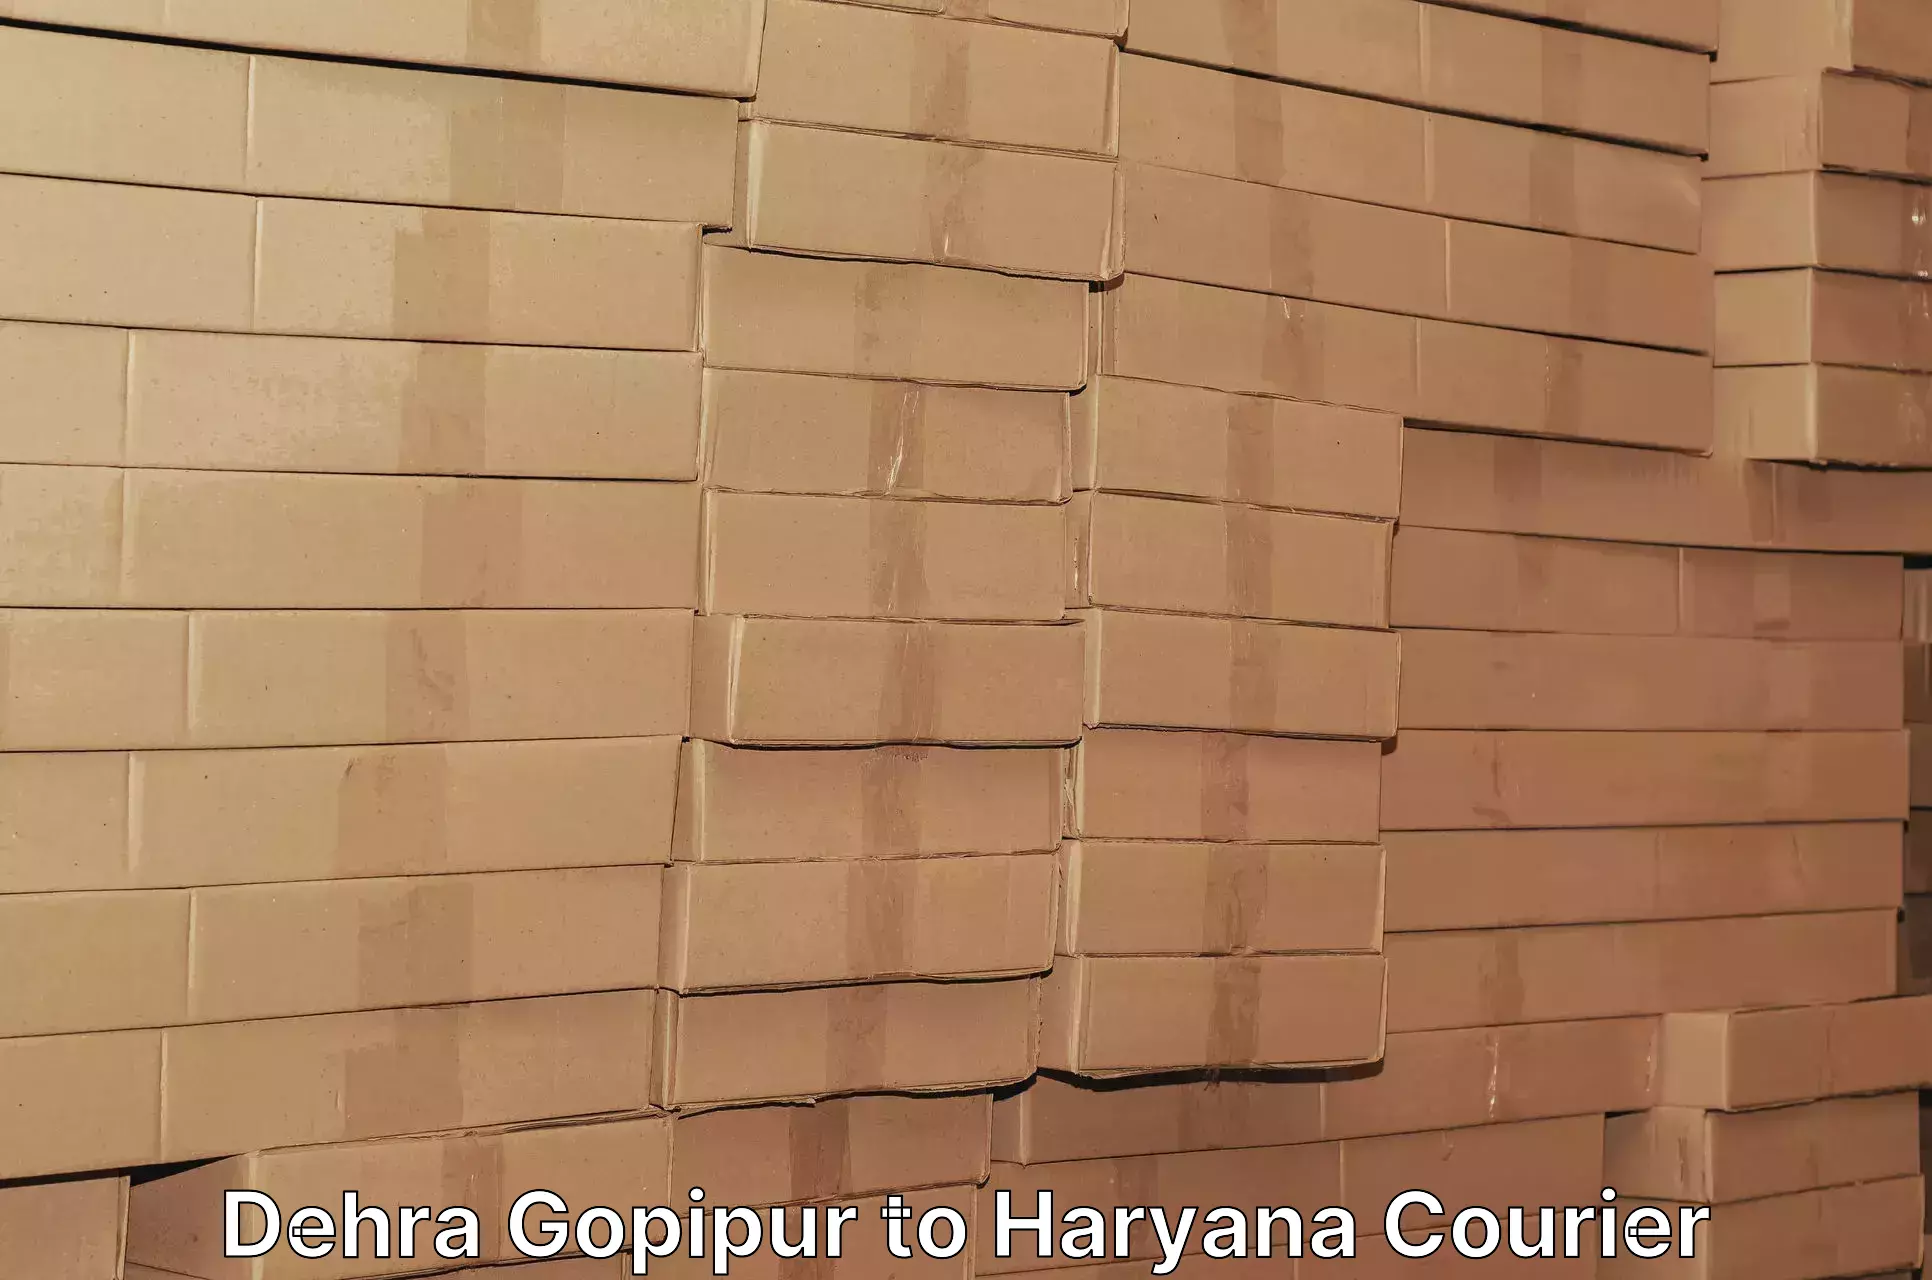 Logistics service provider Dehra Gopipur to Ratia